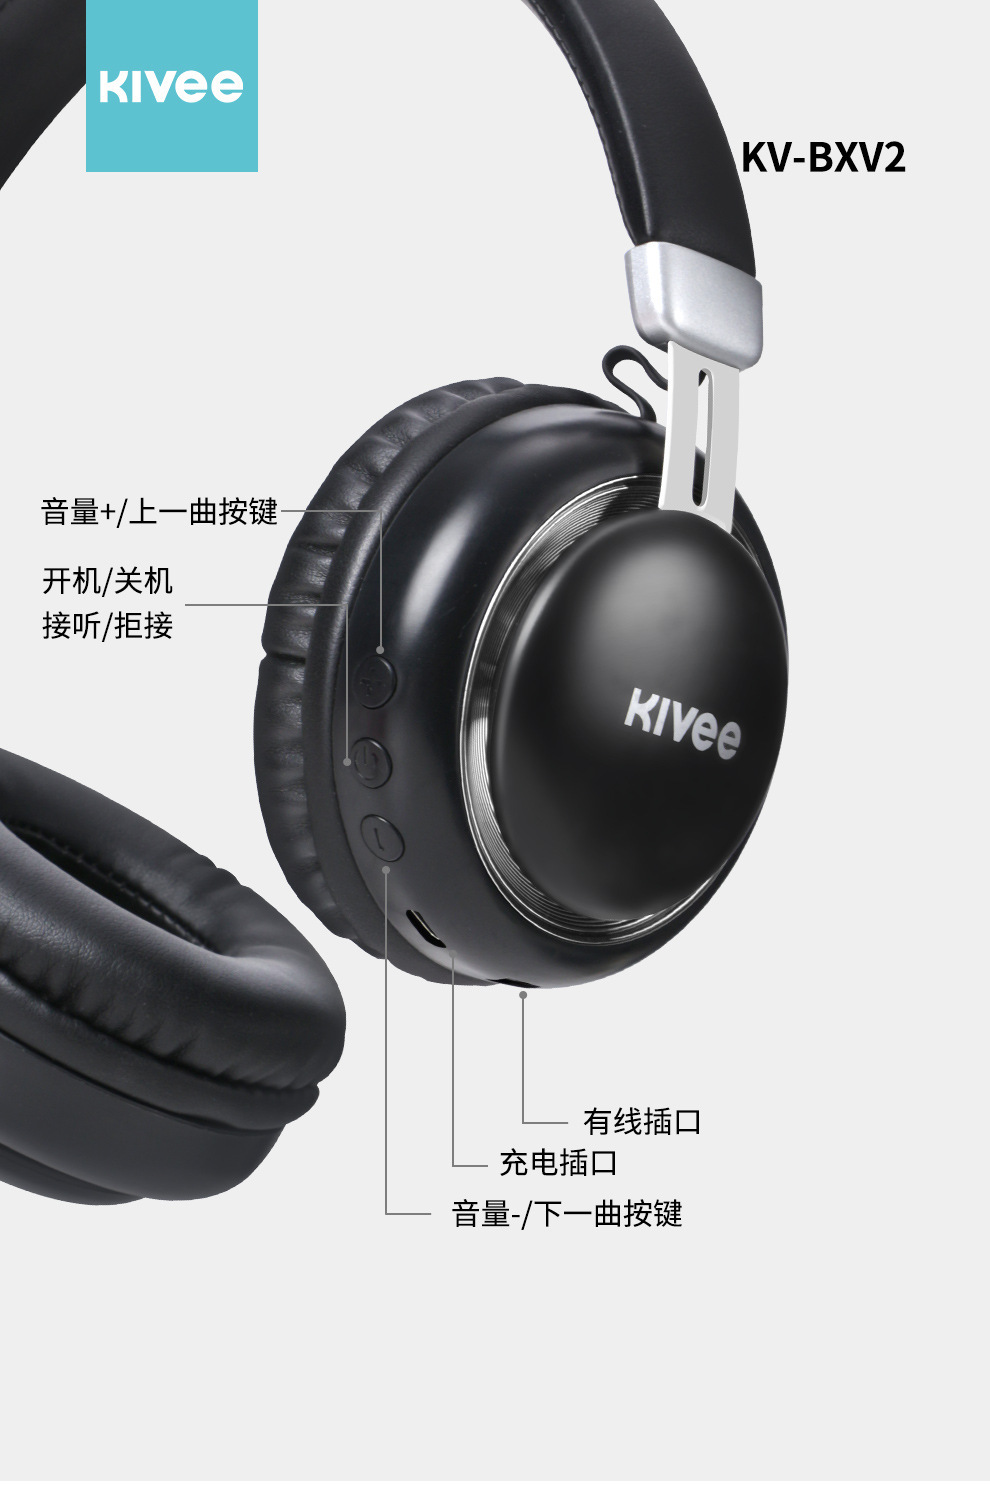 KV-BXV2 头戴式耳机有线无线两模式手机电脑通用运动跑步蓝牙耳机